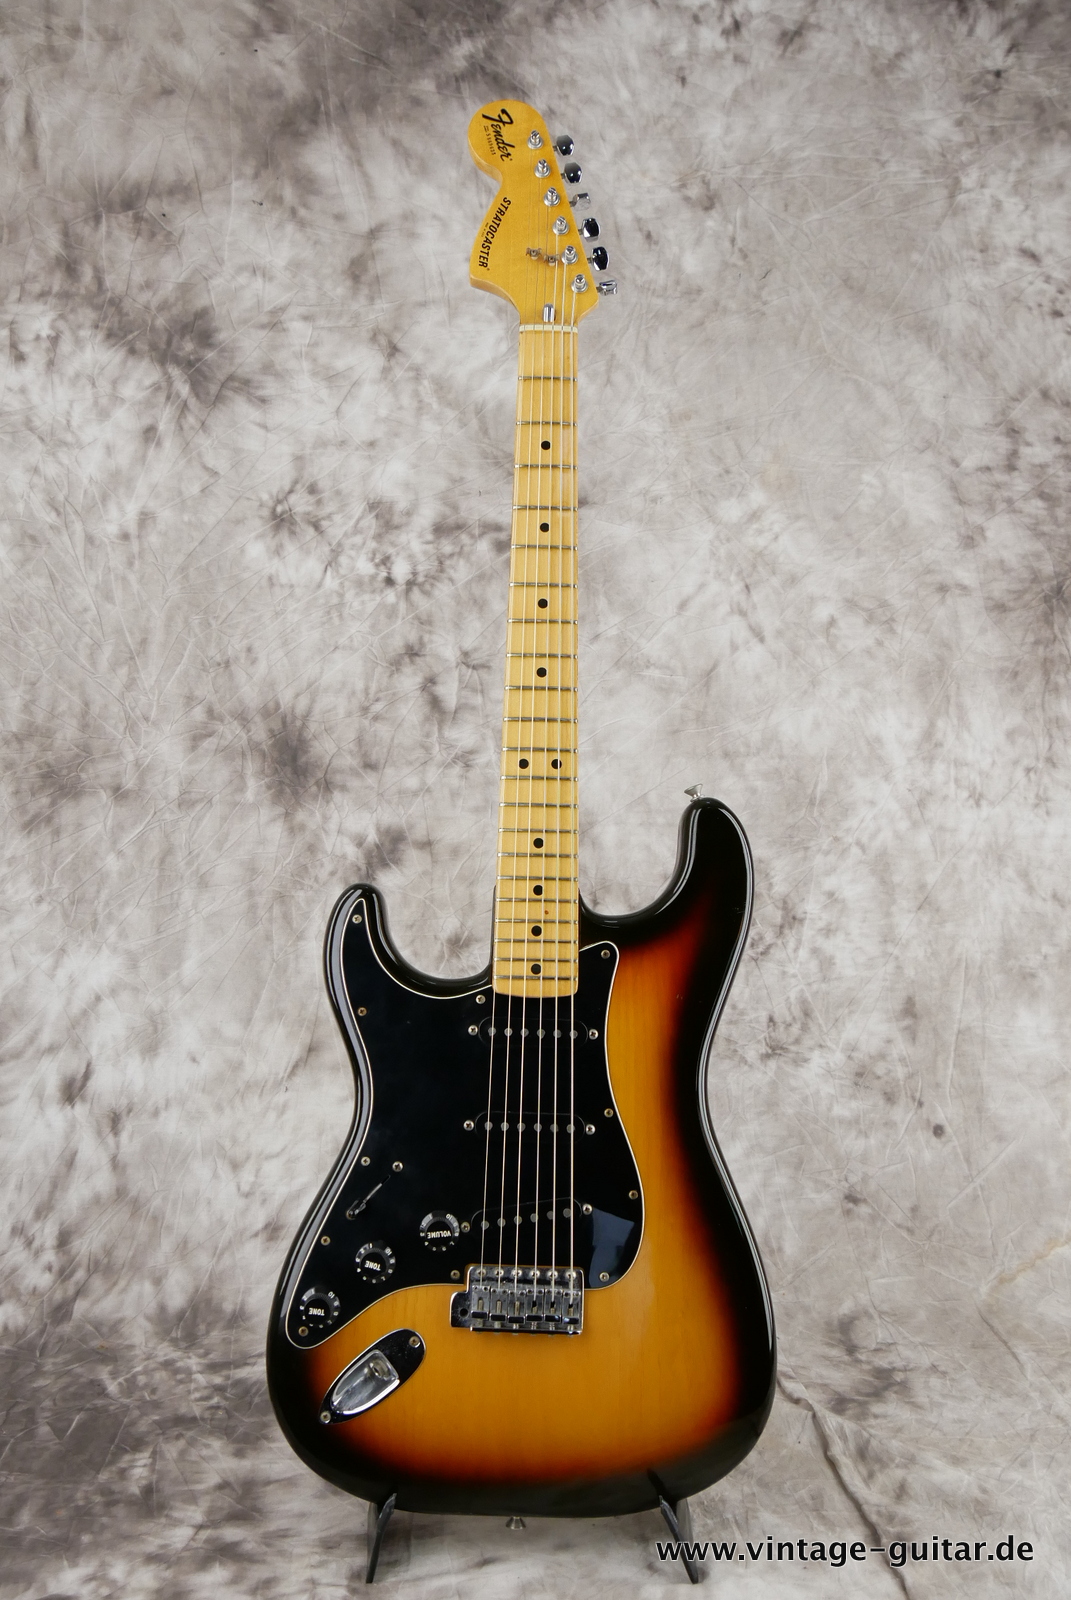 Fender_Left_Hand_Stratocaster_1980_sunburst_usa_maple_neck-001.JPG